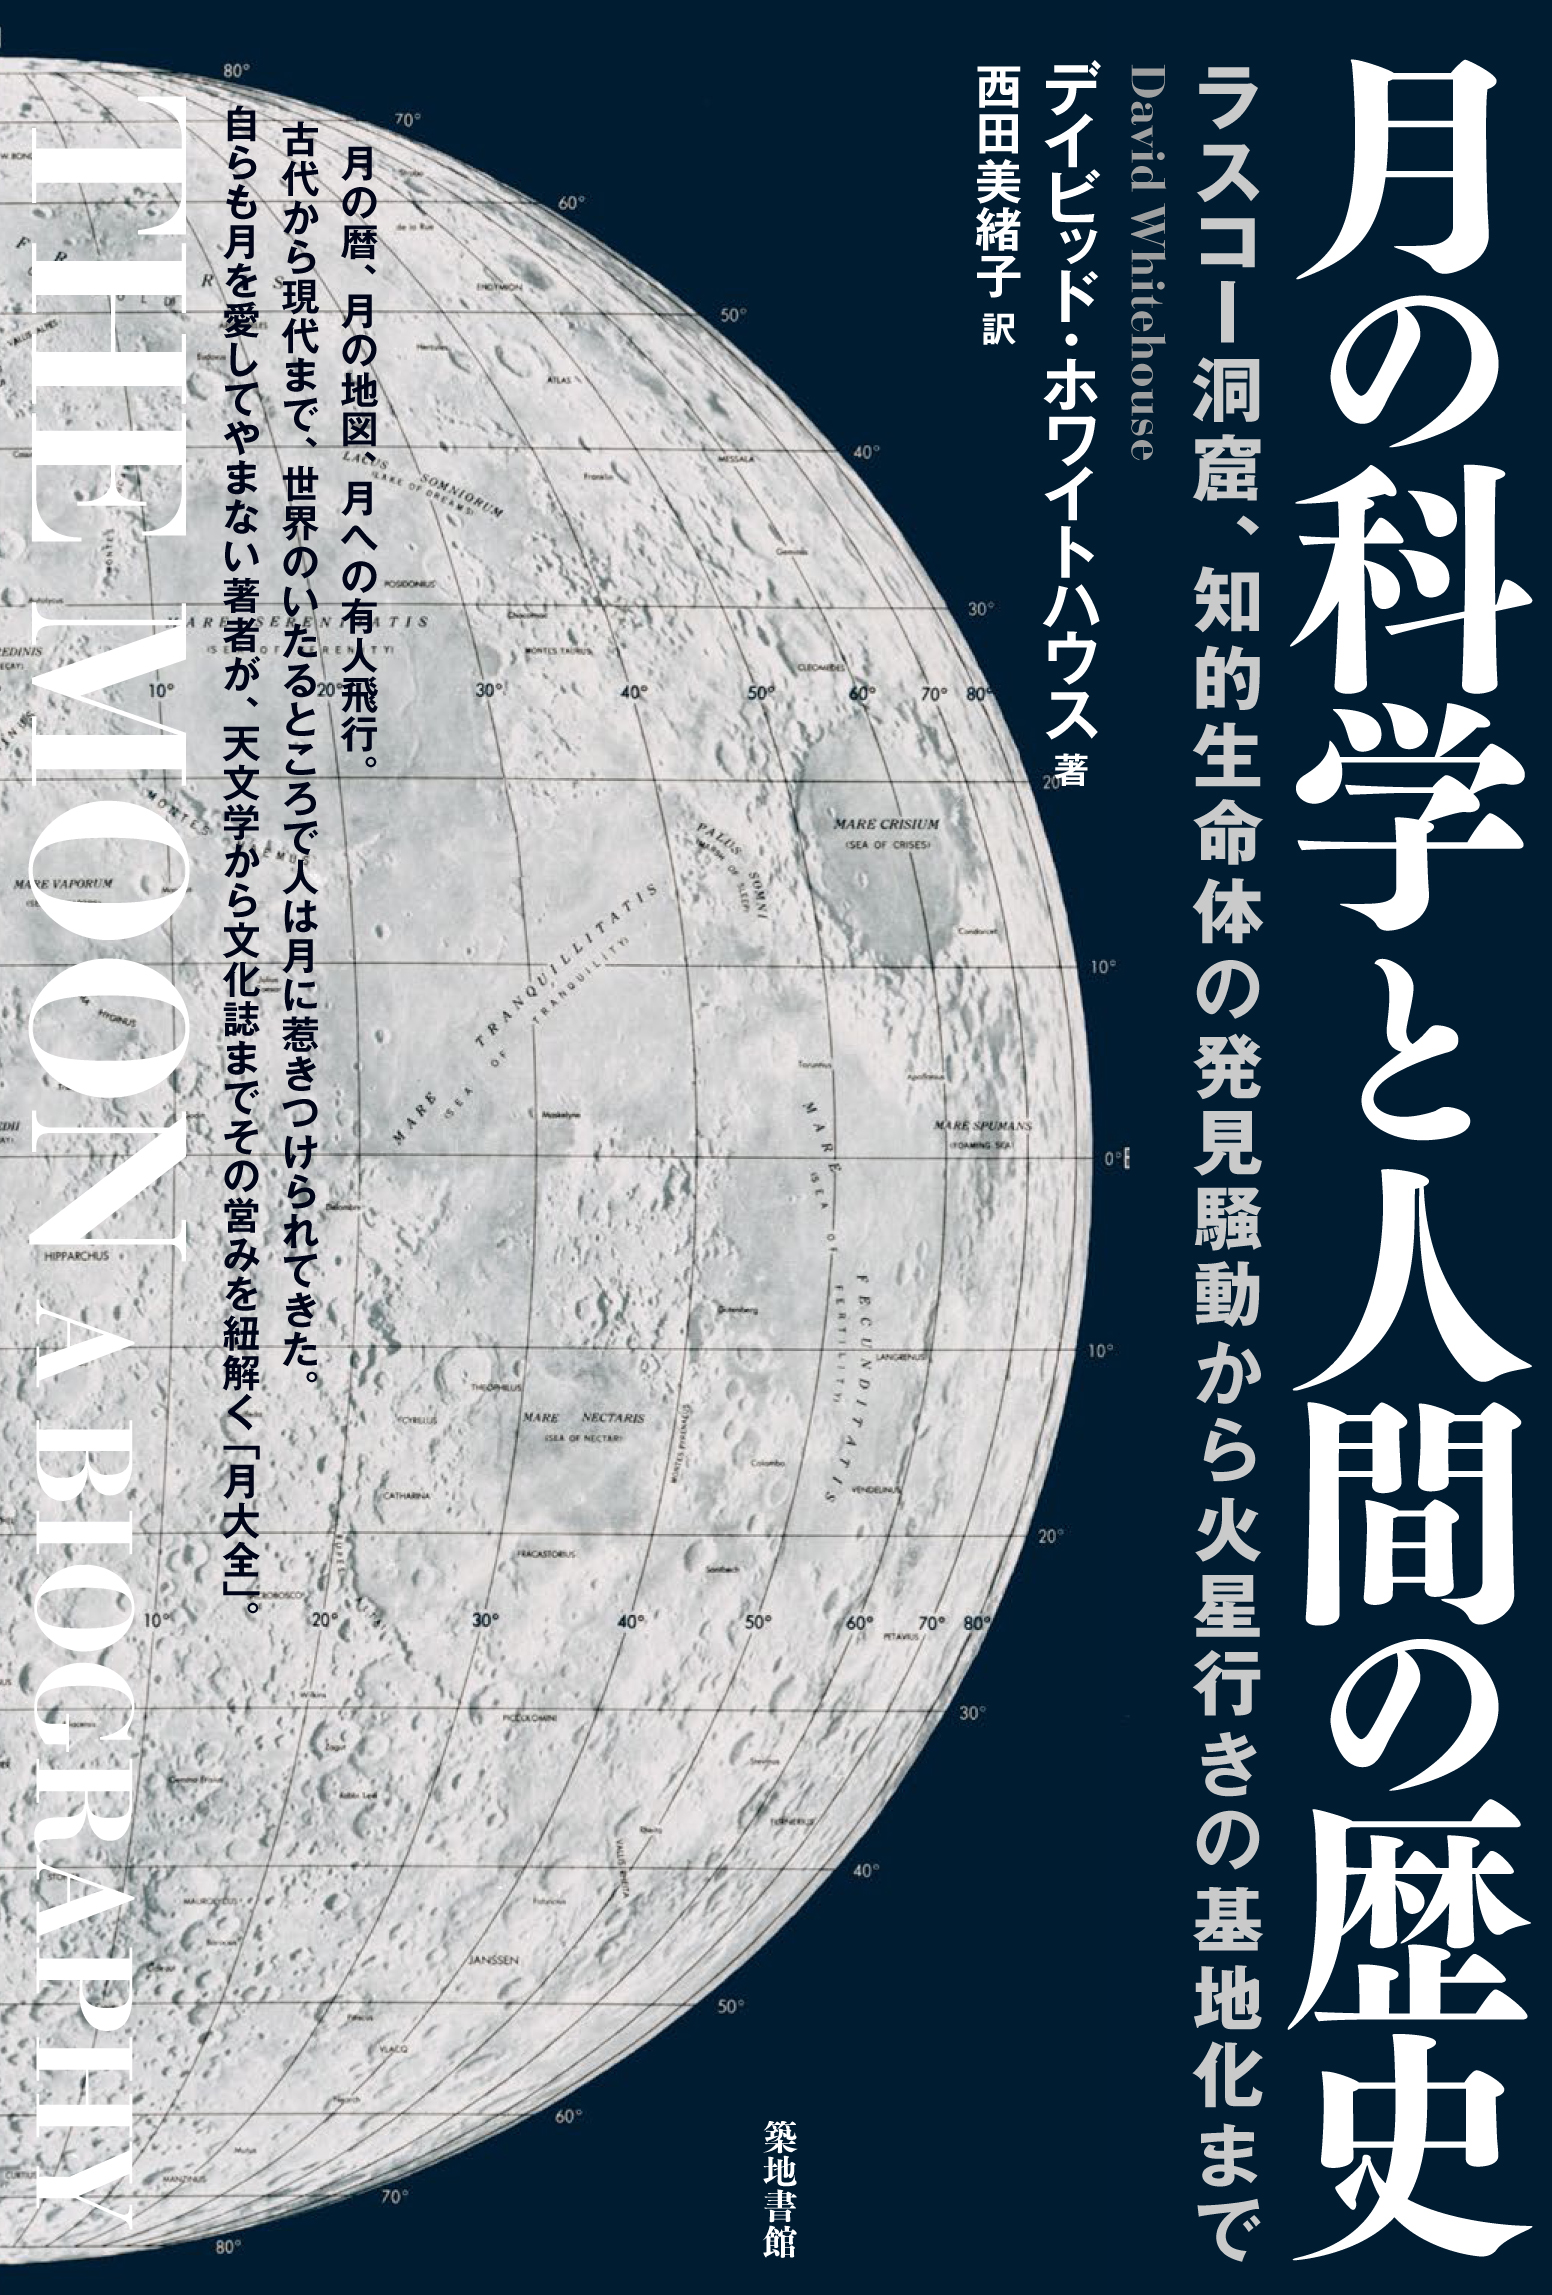 月の科学と人間の歴史の商品画像